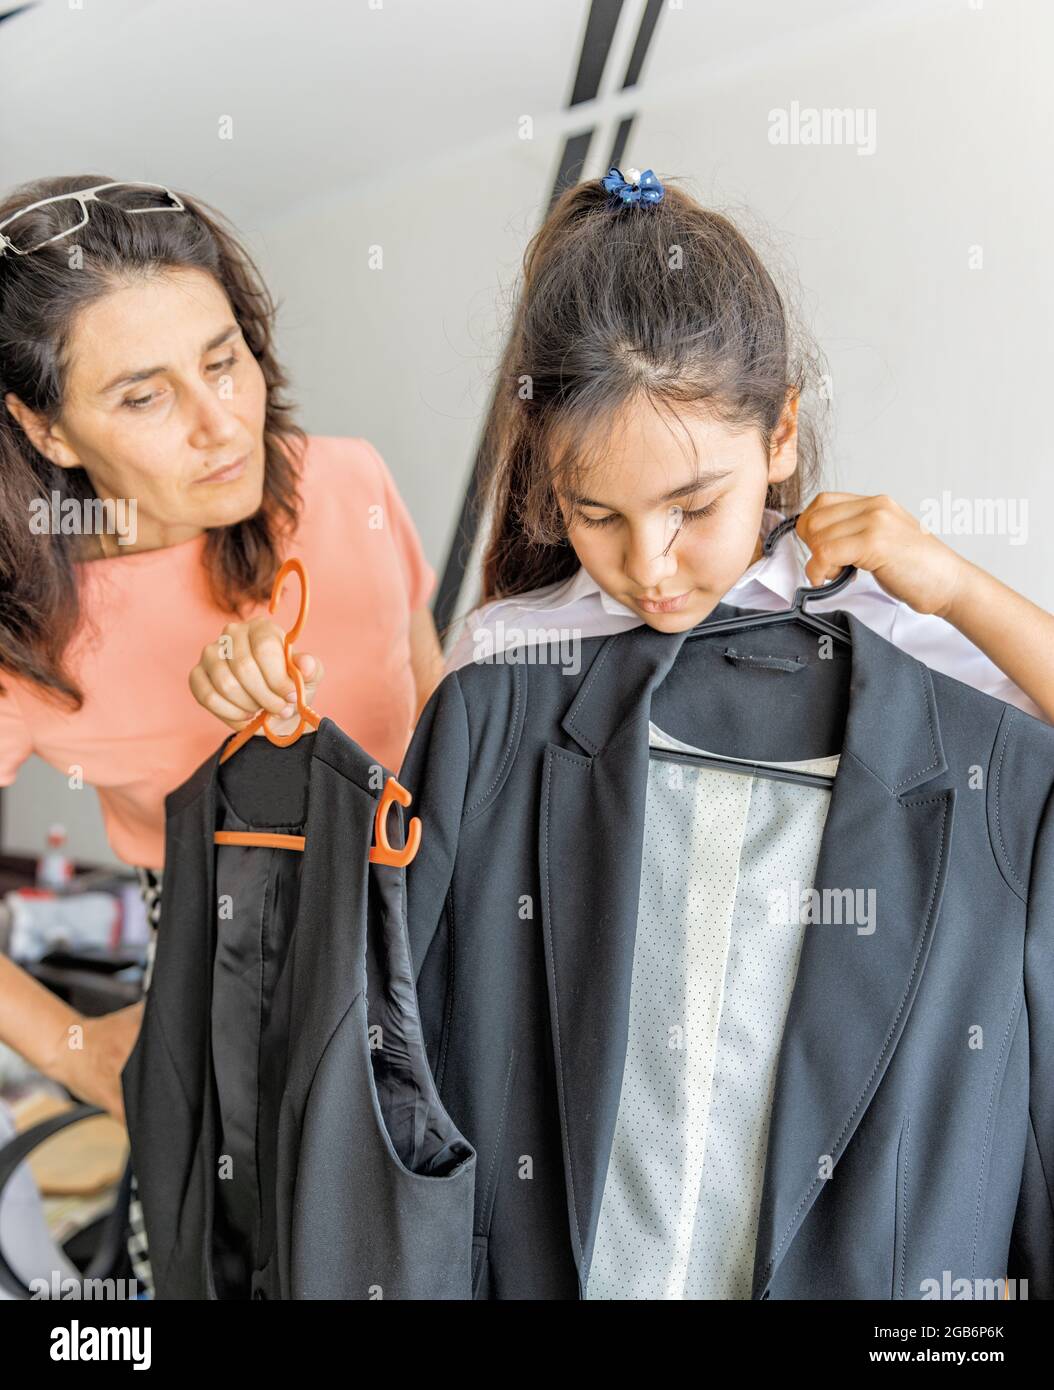 una studentessa cerca un nuovo vestito per la scuola Foto Stock